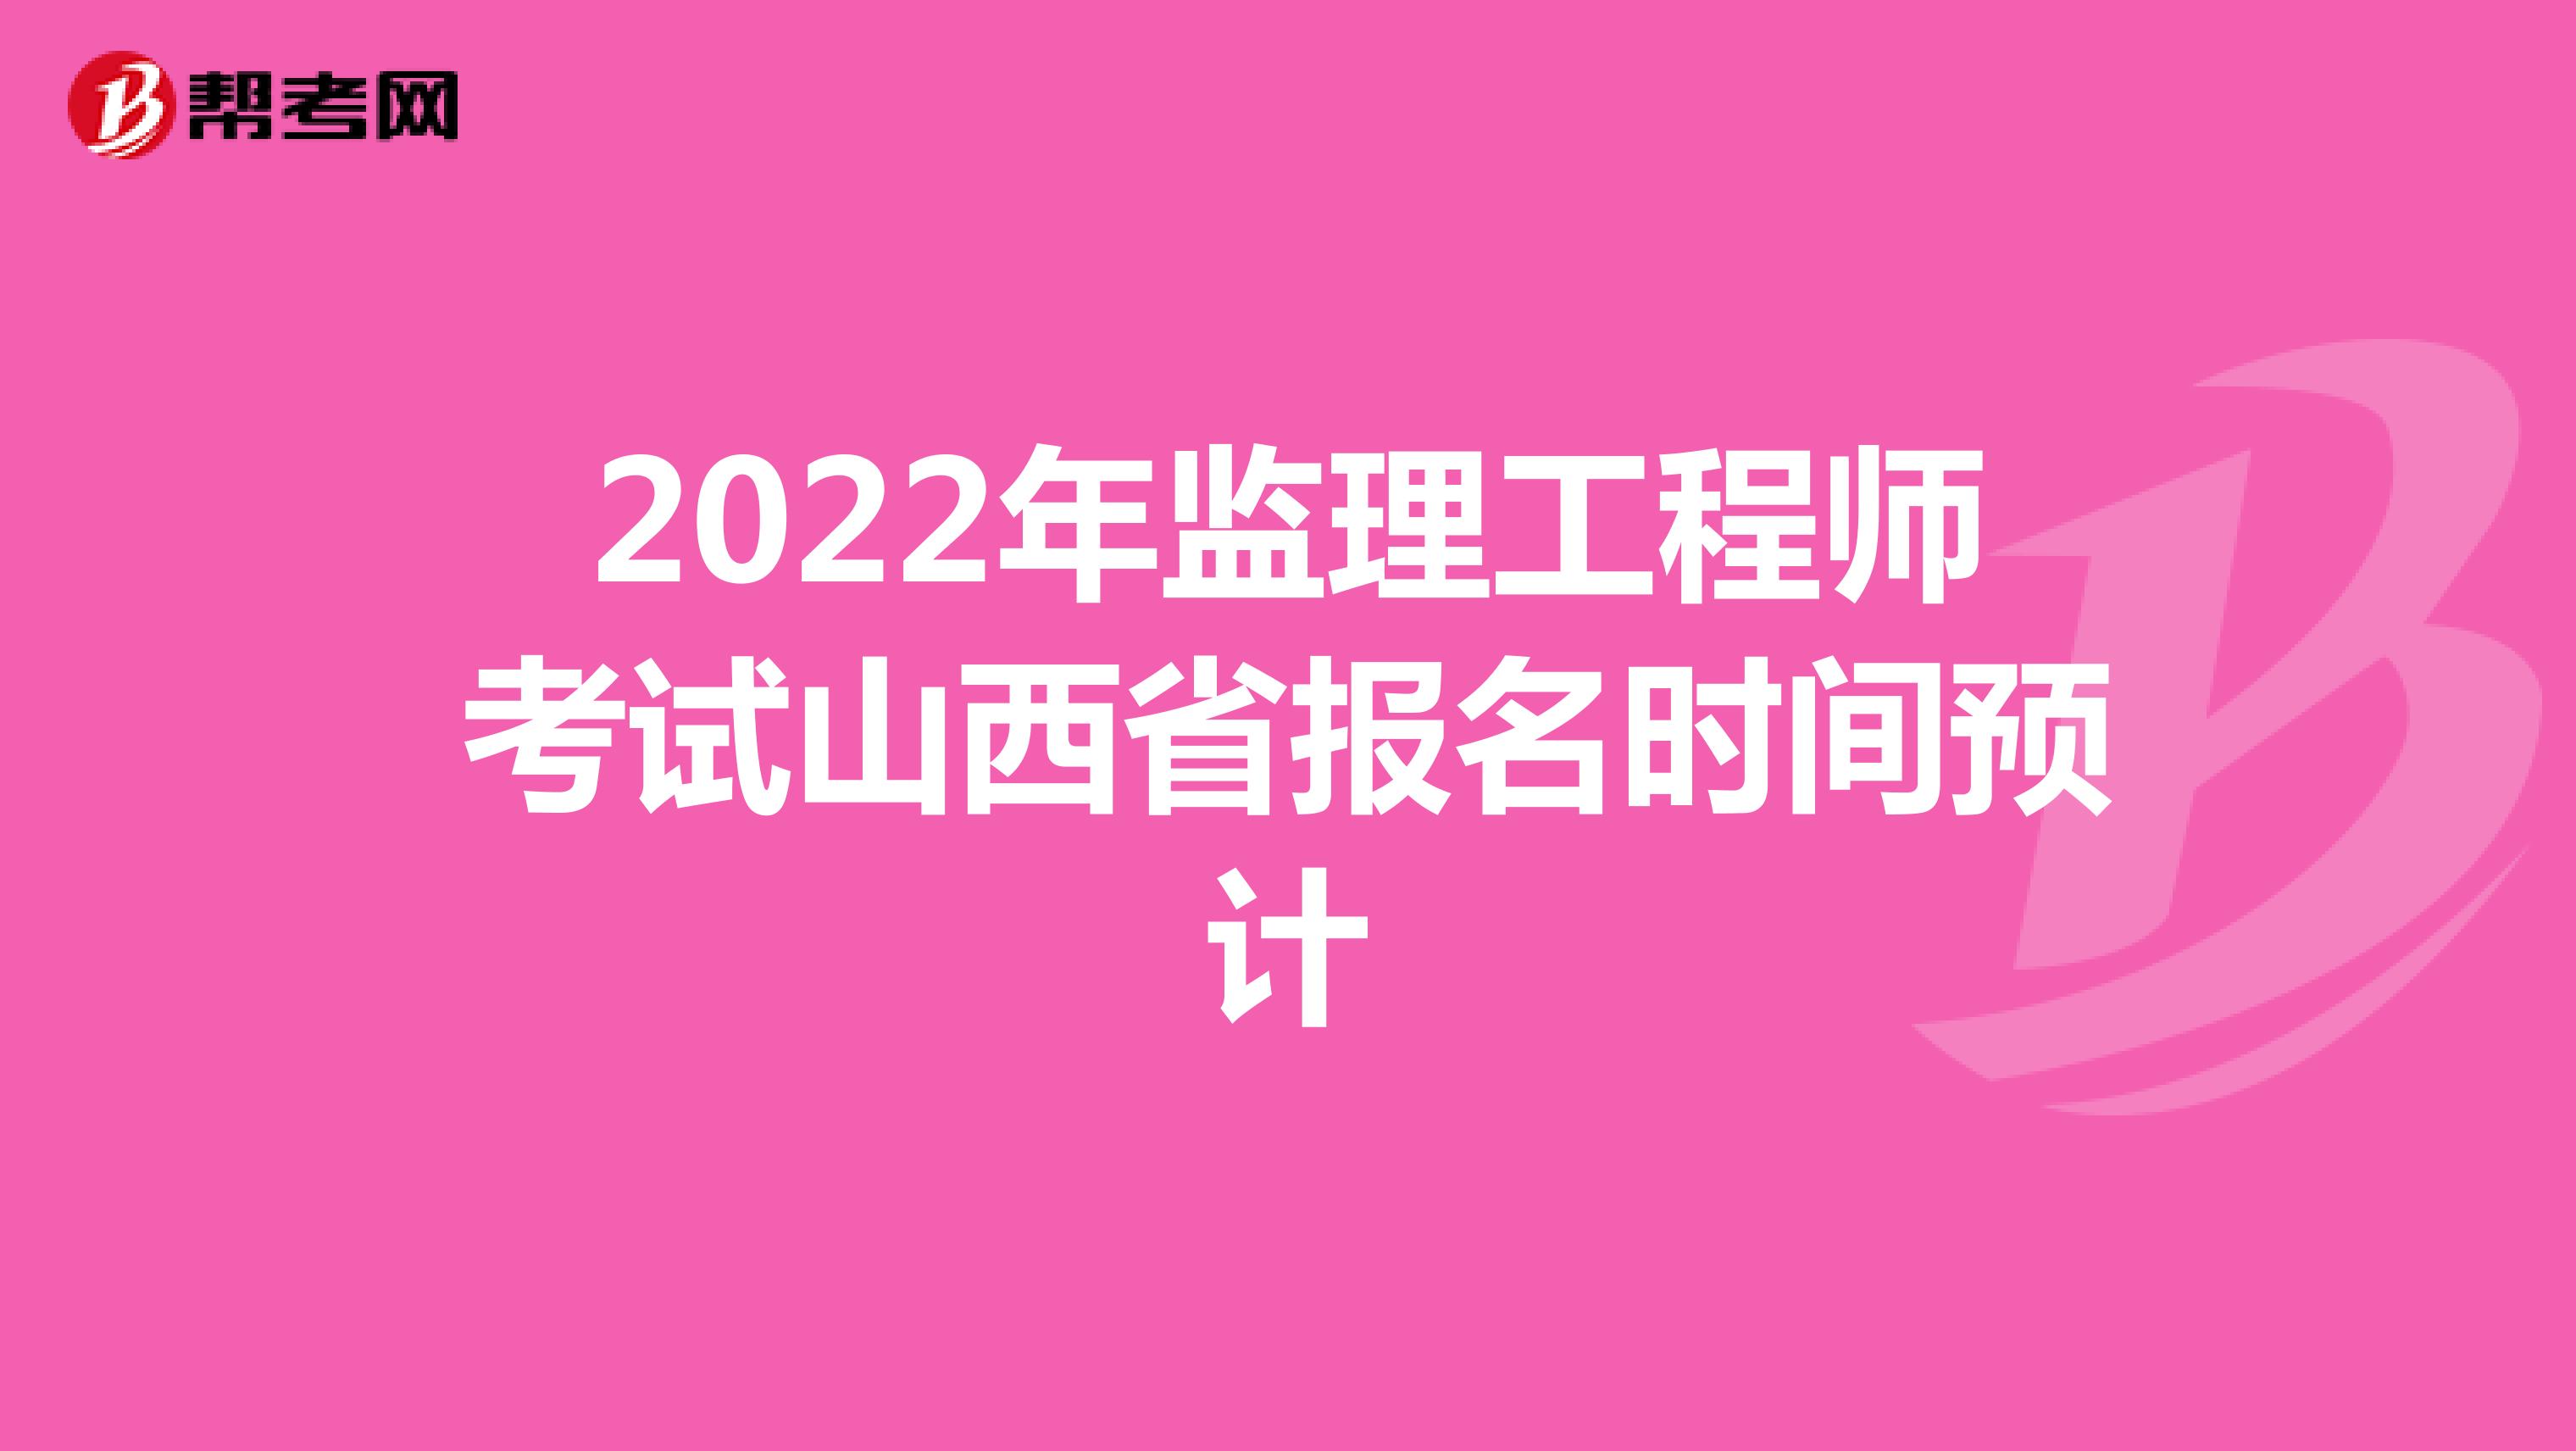 2022年监理工程师考试山西省报名时间预计